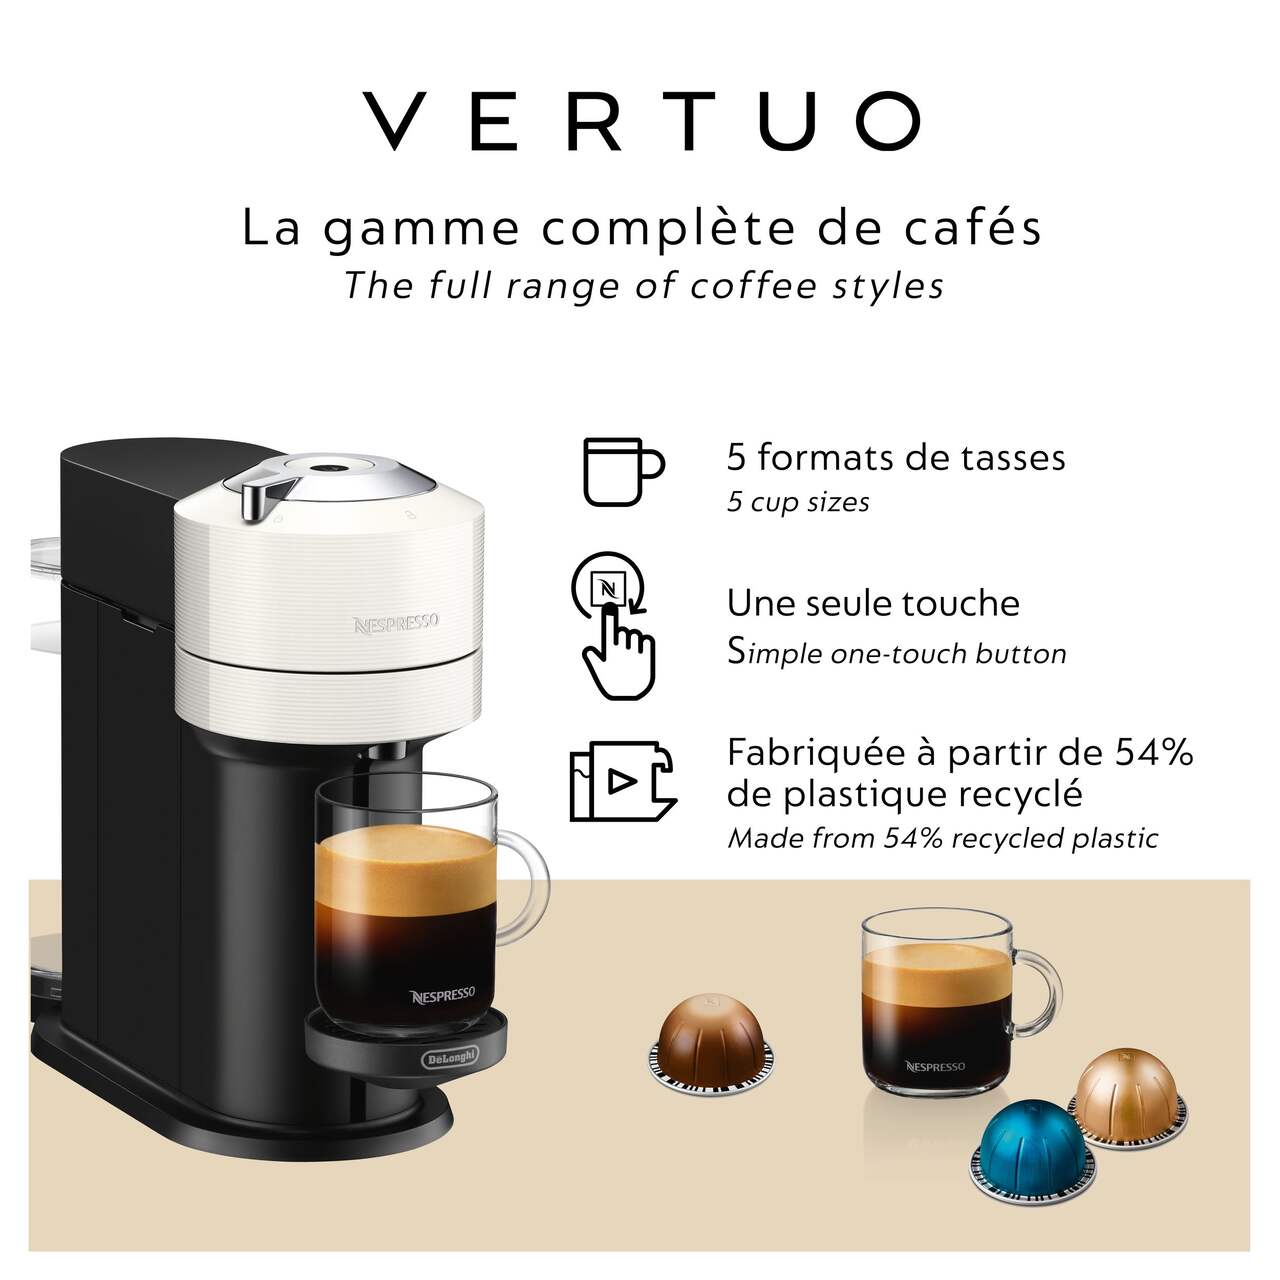 Machine à Café Nespresso Vertuo Next - Achat en ligne - Magimix